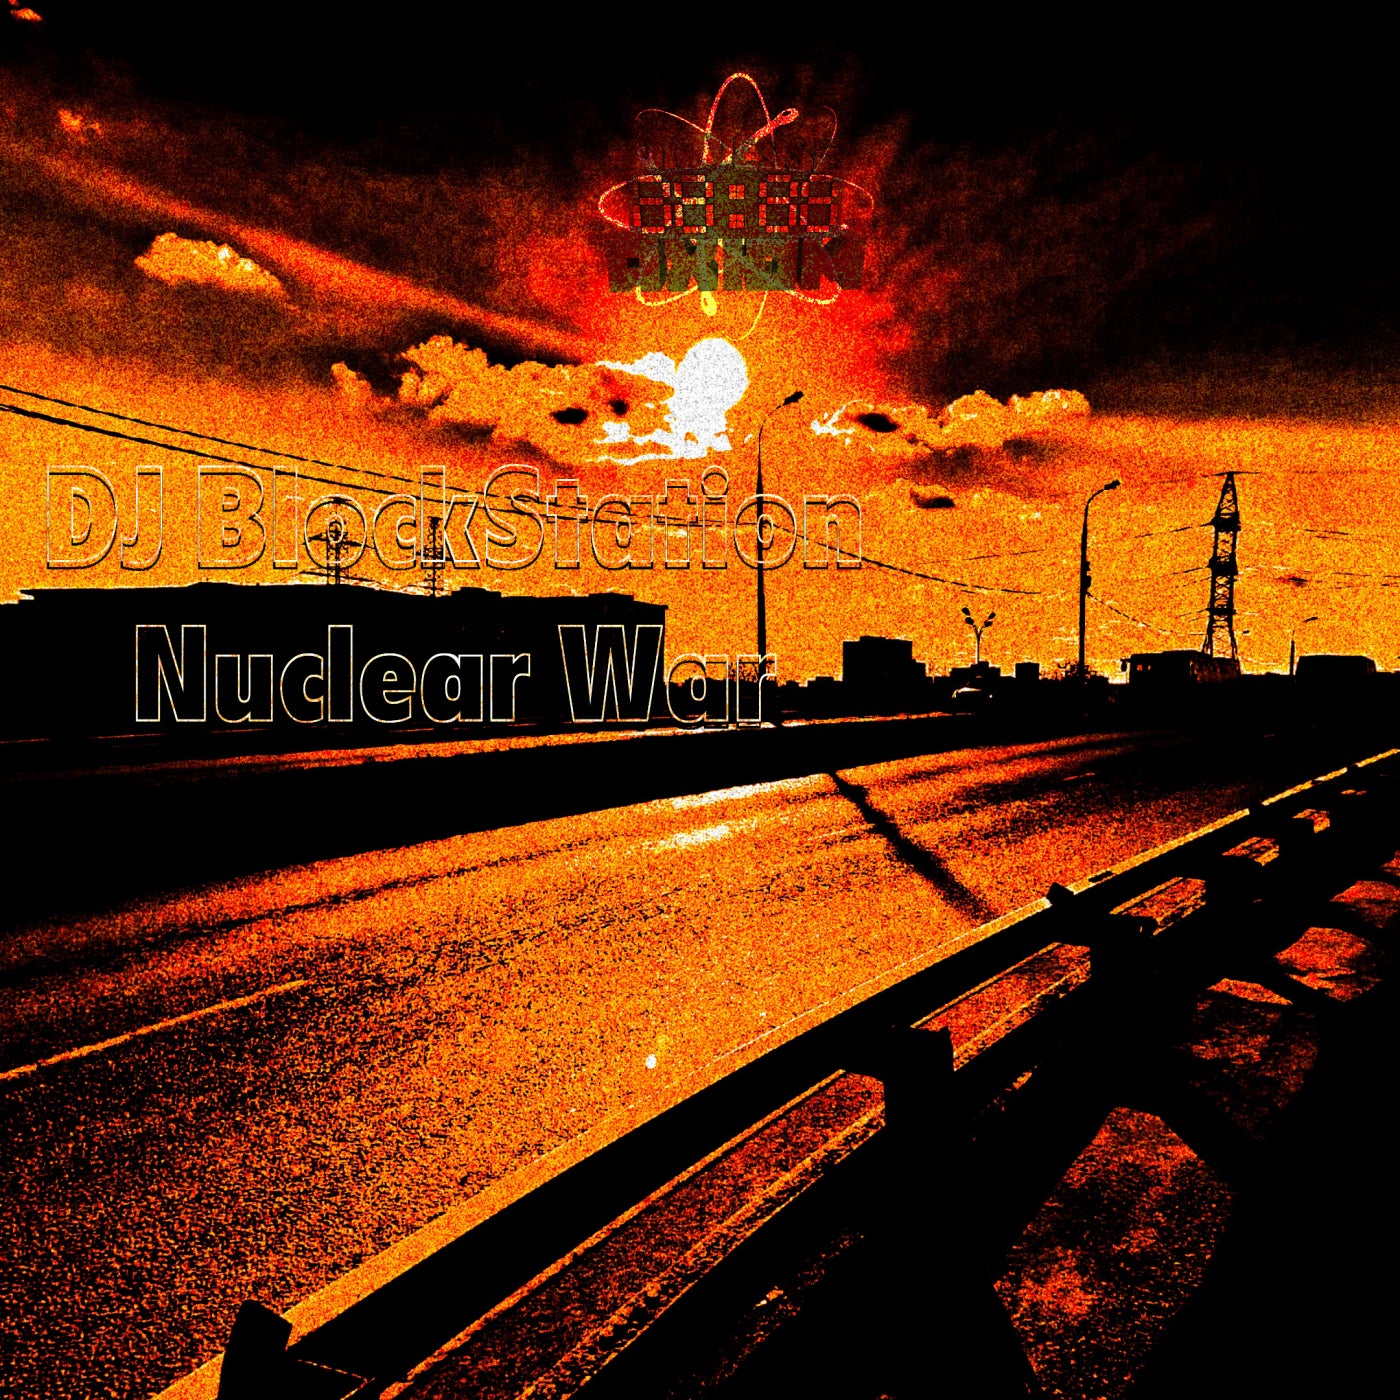 Nuclear War